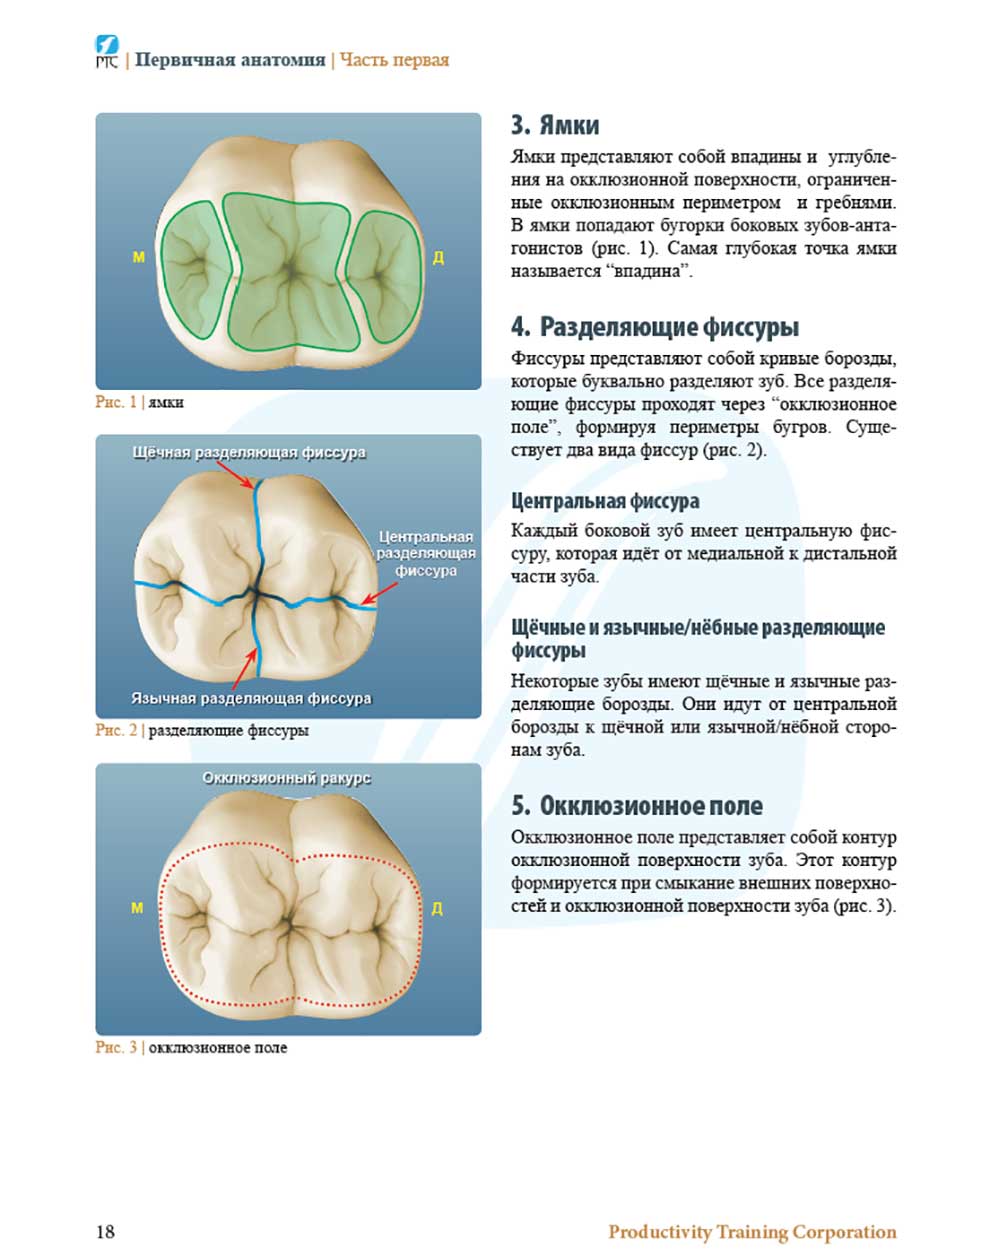 Первичная анатомия зубов